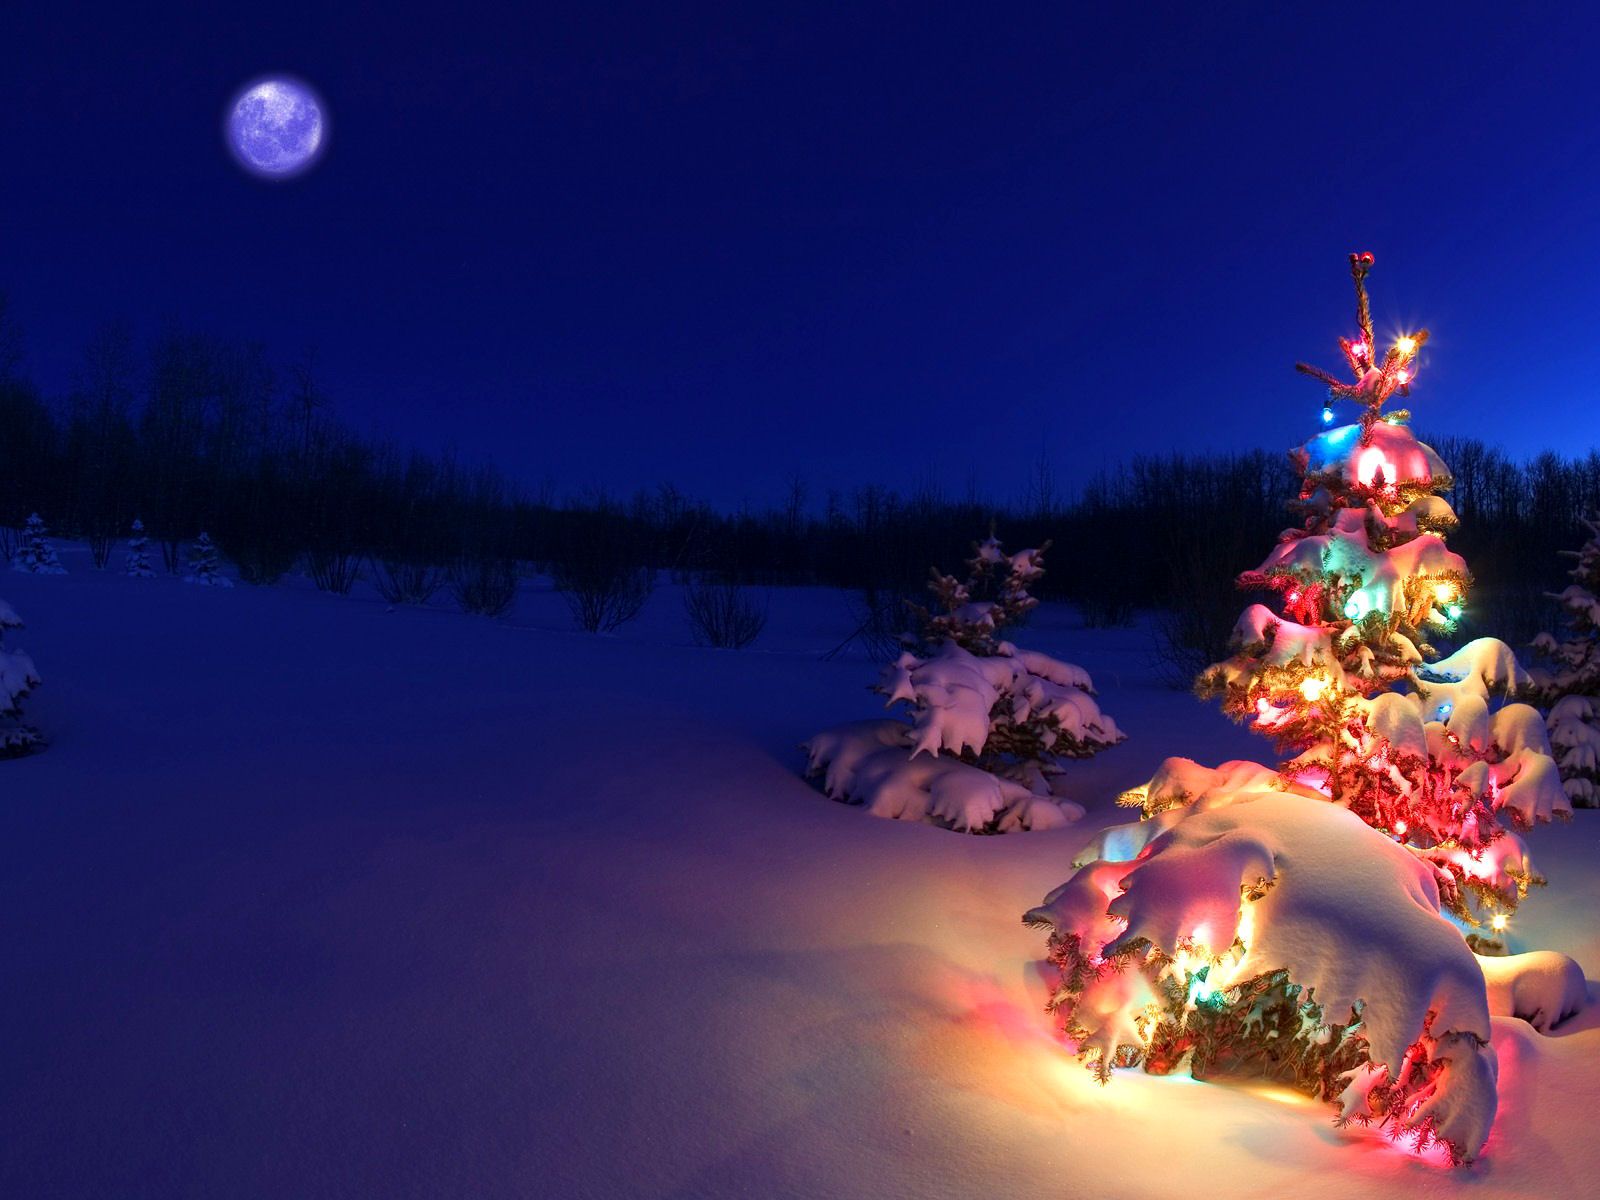 Hình nền Giáng sinh sẽ làm căn phòng của bạn trở nên ấm áp và thú vị hơn trong mùa lễ hội này. Hãy cùng xem các hình nền Giáng sinh để lựa chọn cho mình một bức ảnh đẹp và đầy ý nghĩa, mang lại niềm vui và hạnh phúc cho mỗi ngày của bạn.